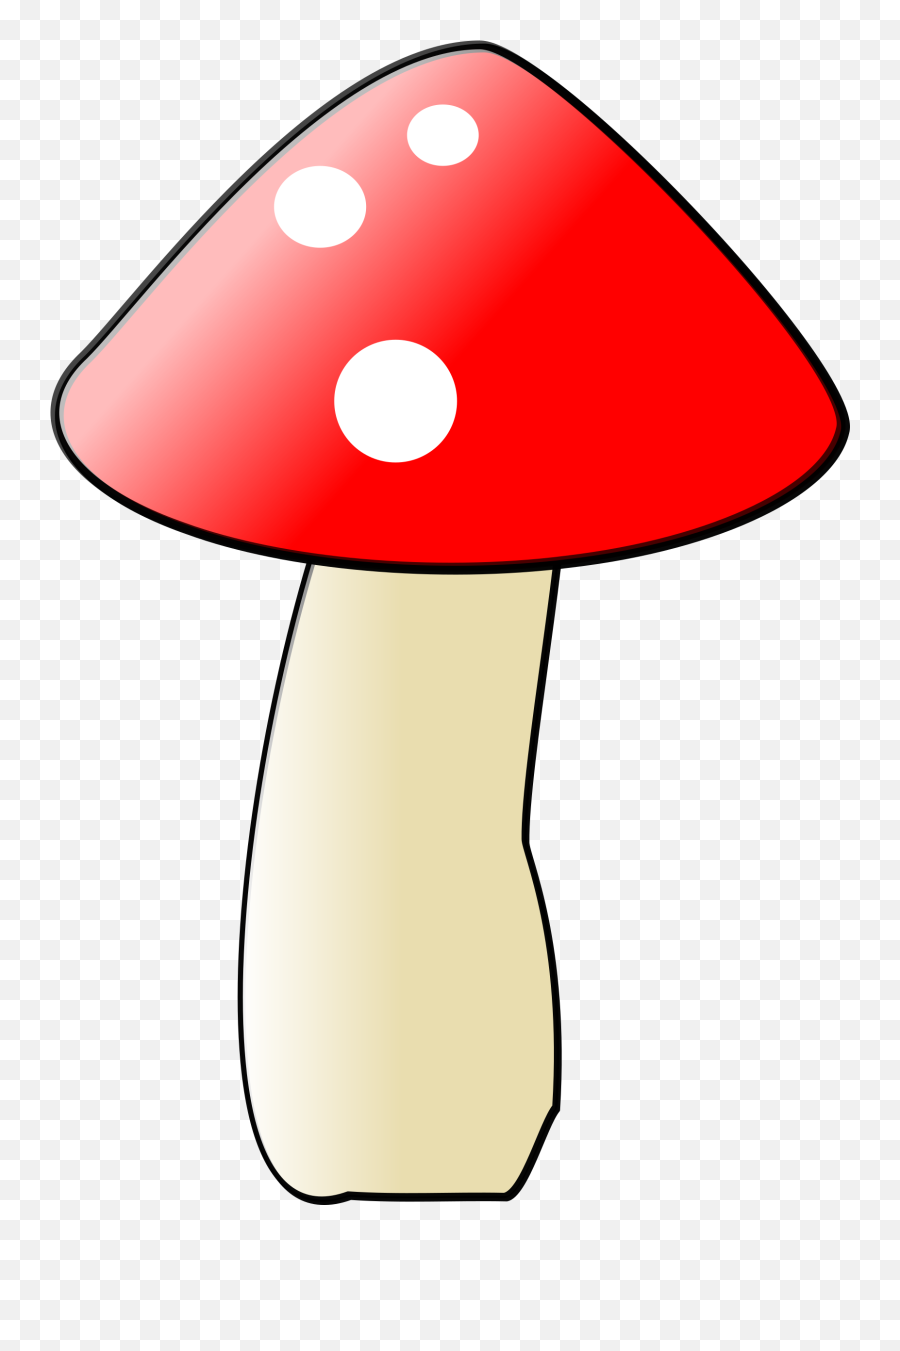 Mushroom Home Png Images - Cartoon Mushroom,Mushroom Transparent Background